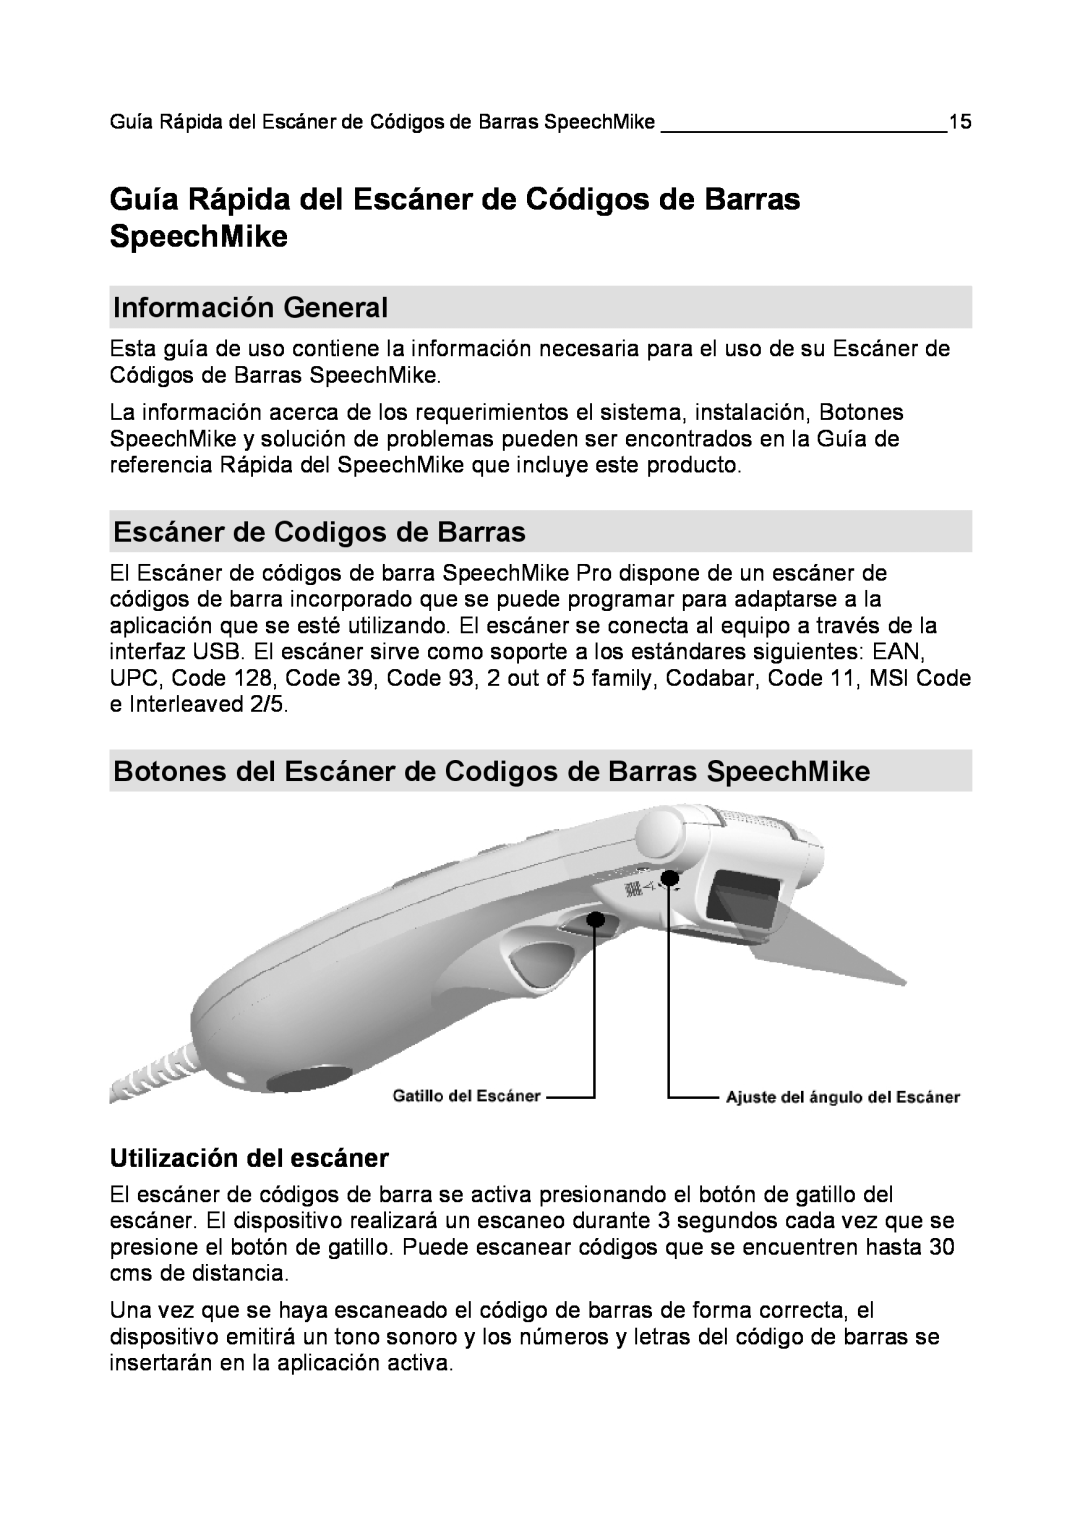 Philips LFH 5284 Guía Rápida del Escáner de Códigos de Barras SpeechMike, Información General, Utilización del escáner 